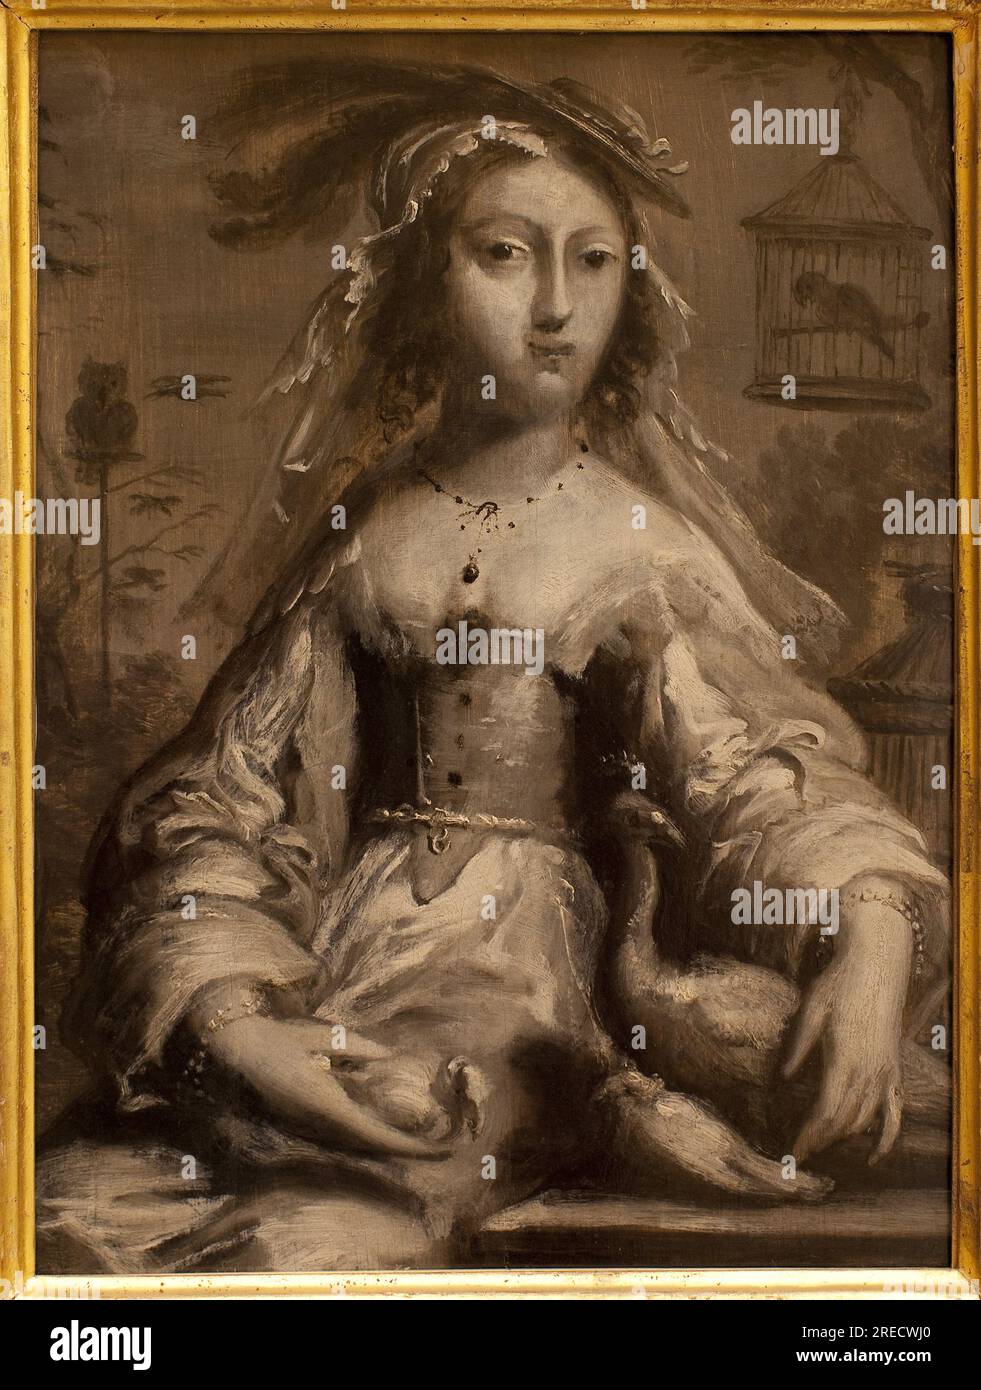 Allegorie de l'air. Peinture de Juste d'Egmnot (1601-1674), Art francais 17e Siecle. Musée des Beaux Arts de Rouen. Stockfoto